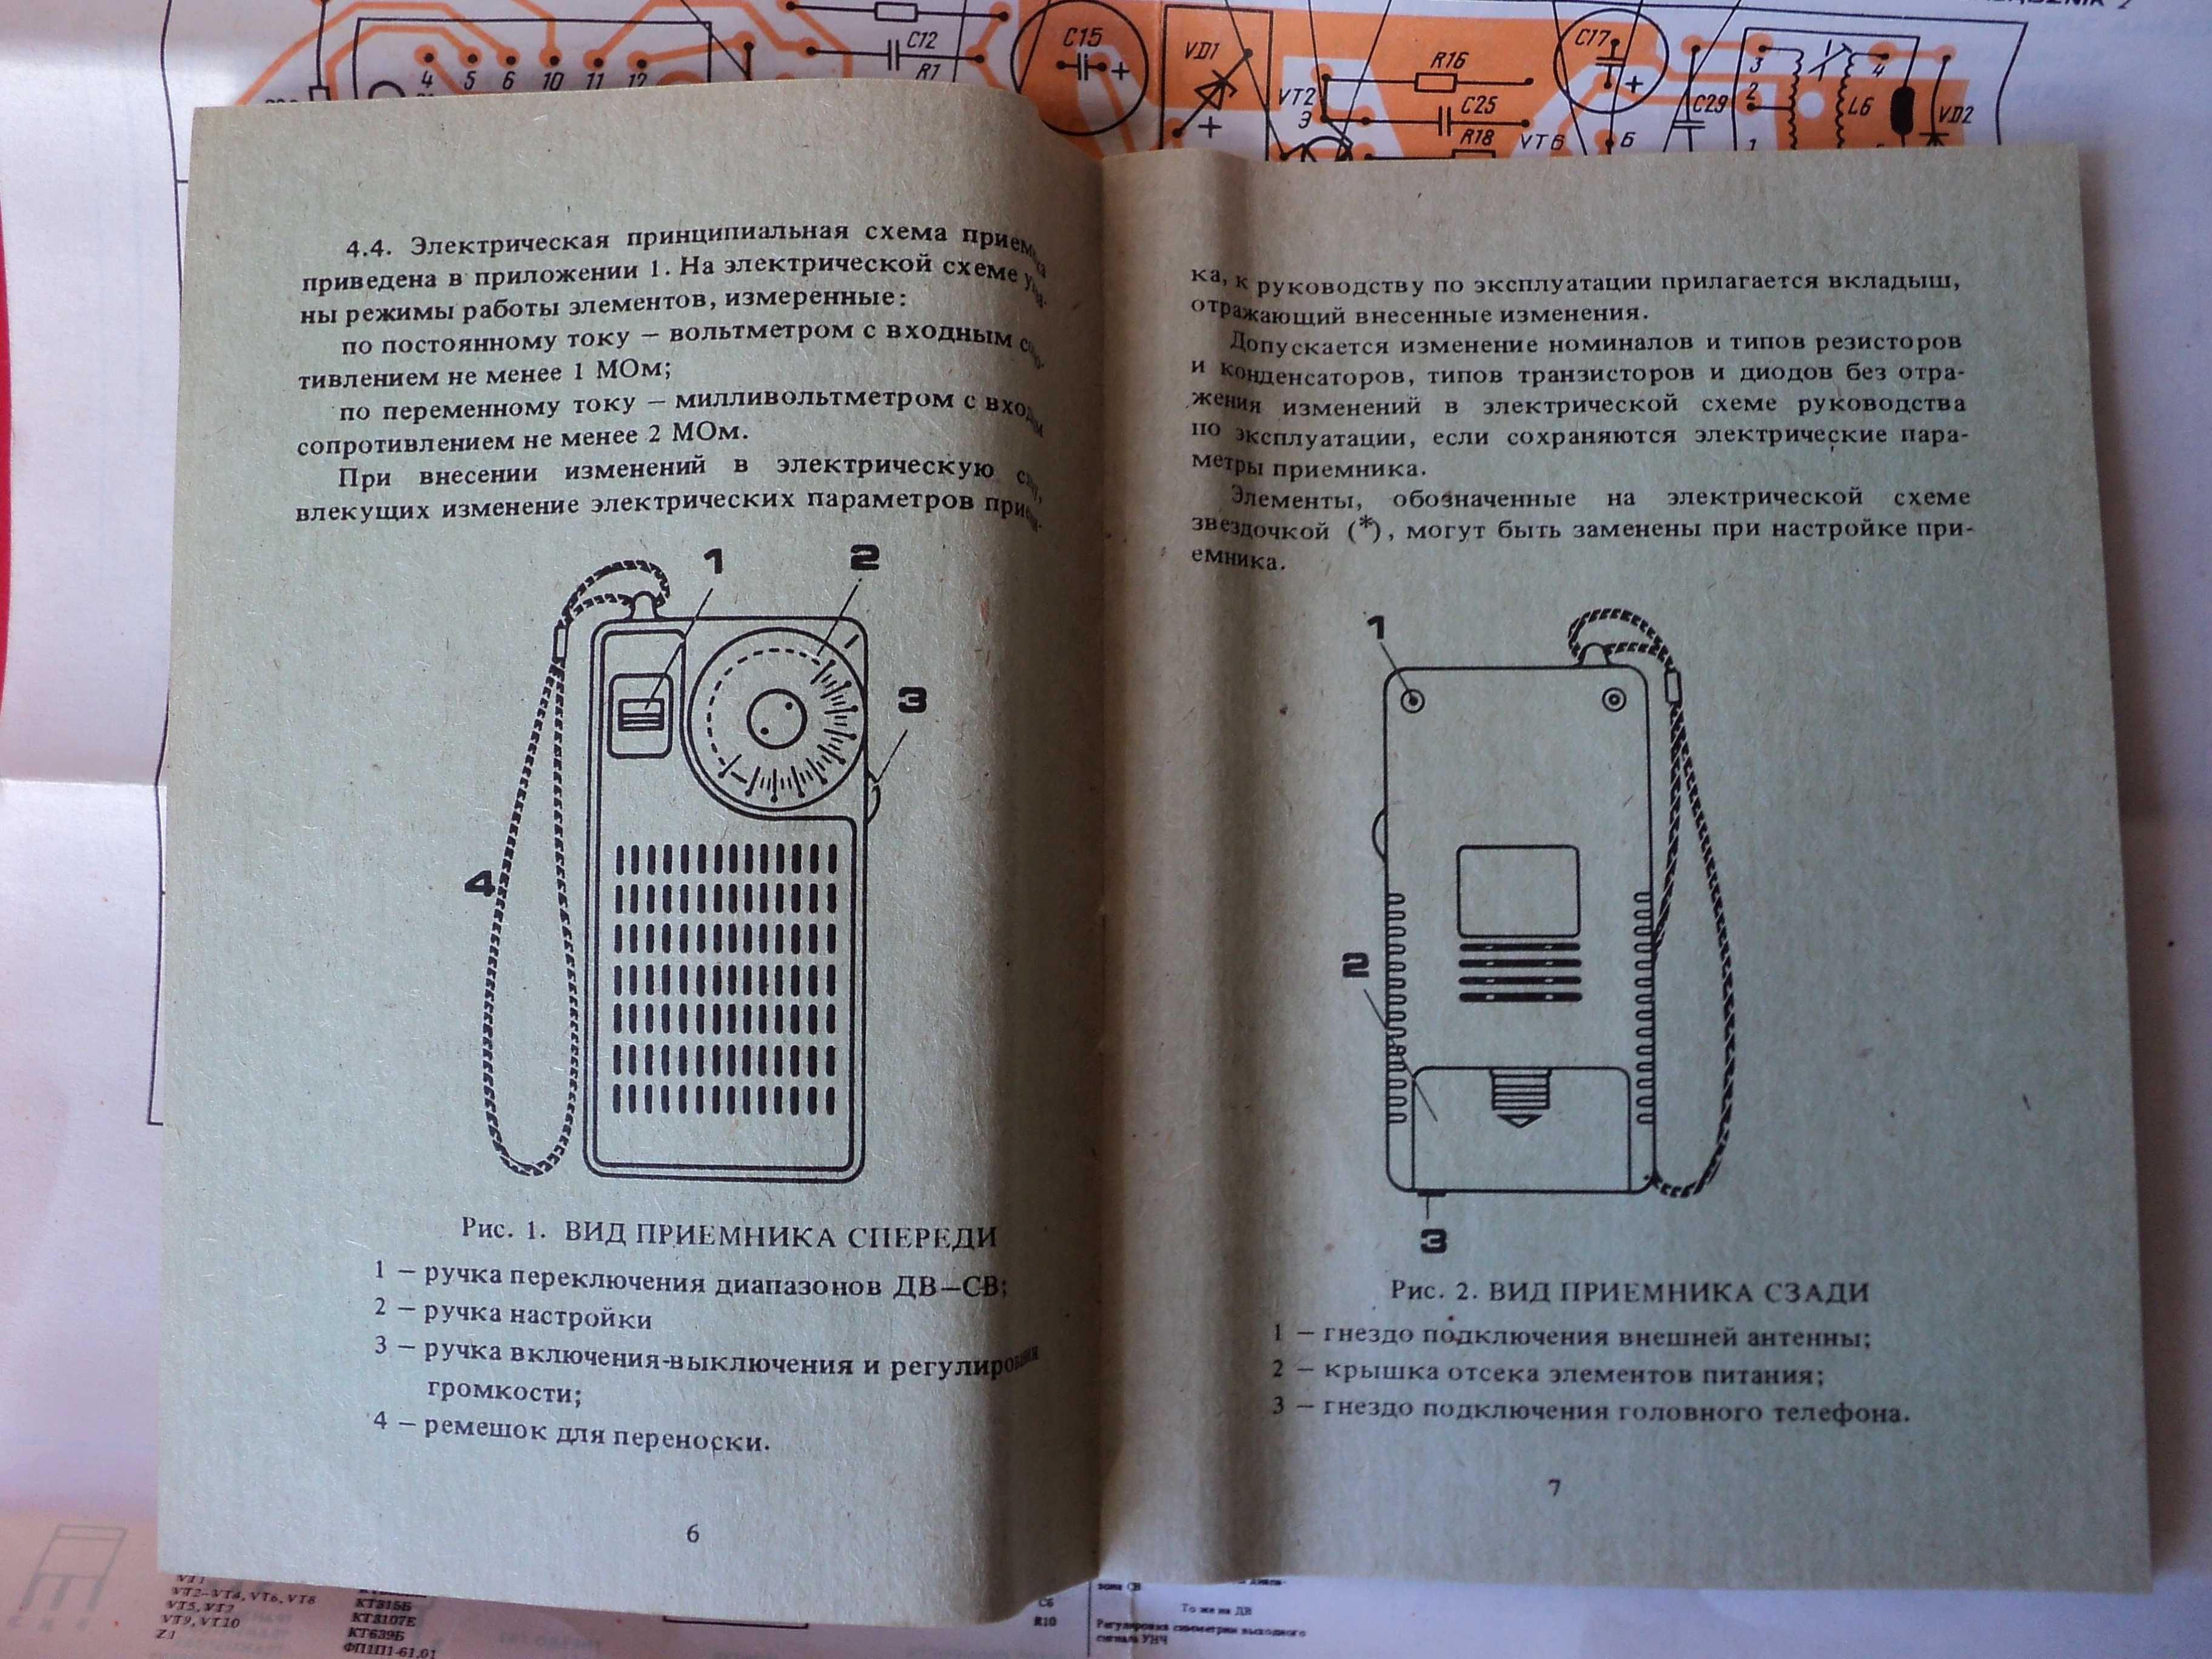 Радиоприемник Сокол РП-310 Новое Состояние Коробка Паспорт